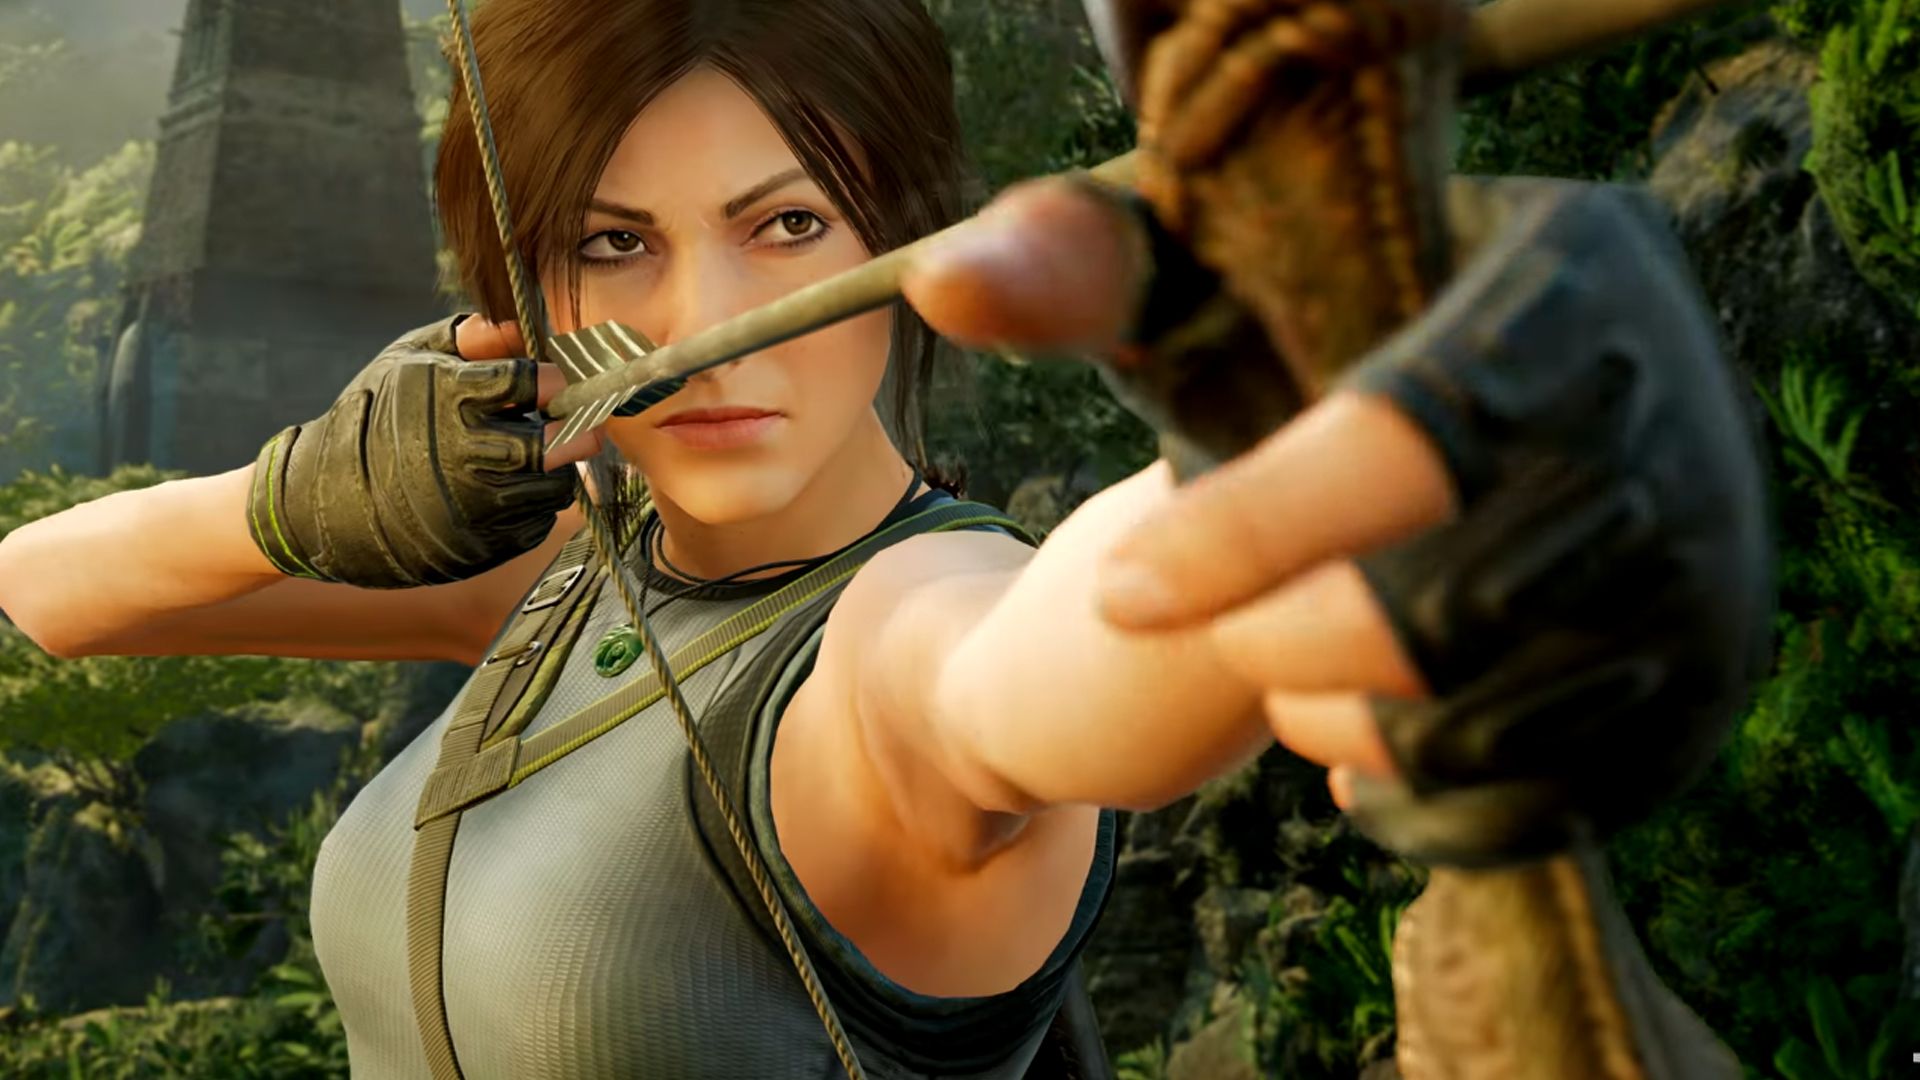 DVD Lara Croft: Tomb Raider - Filmes de Ação e Aventura - Magazine